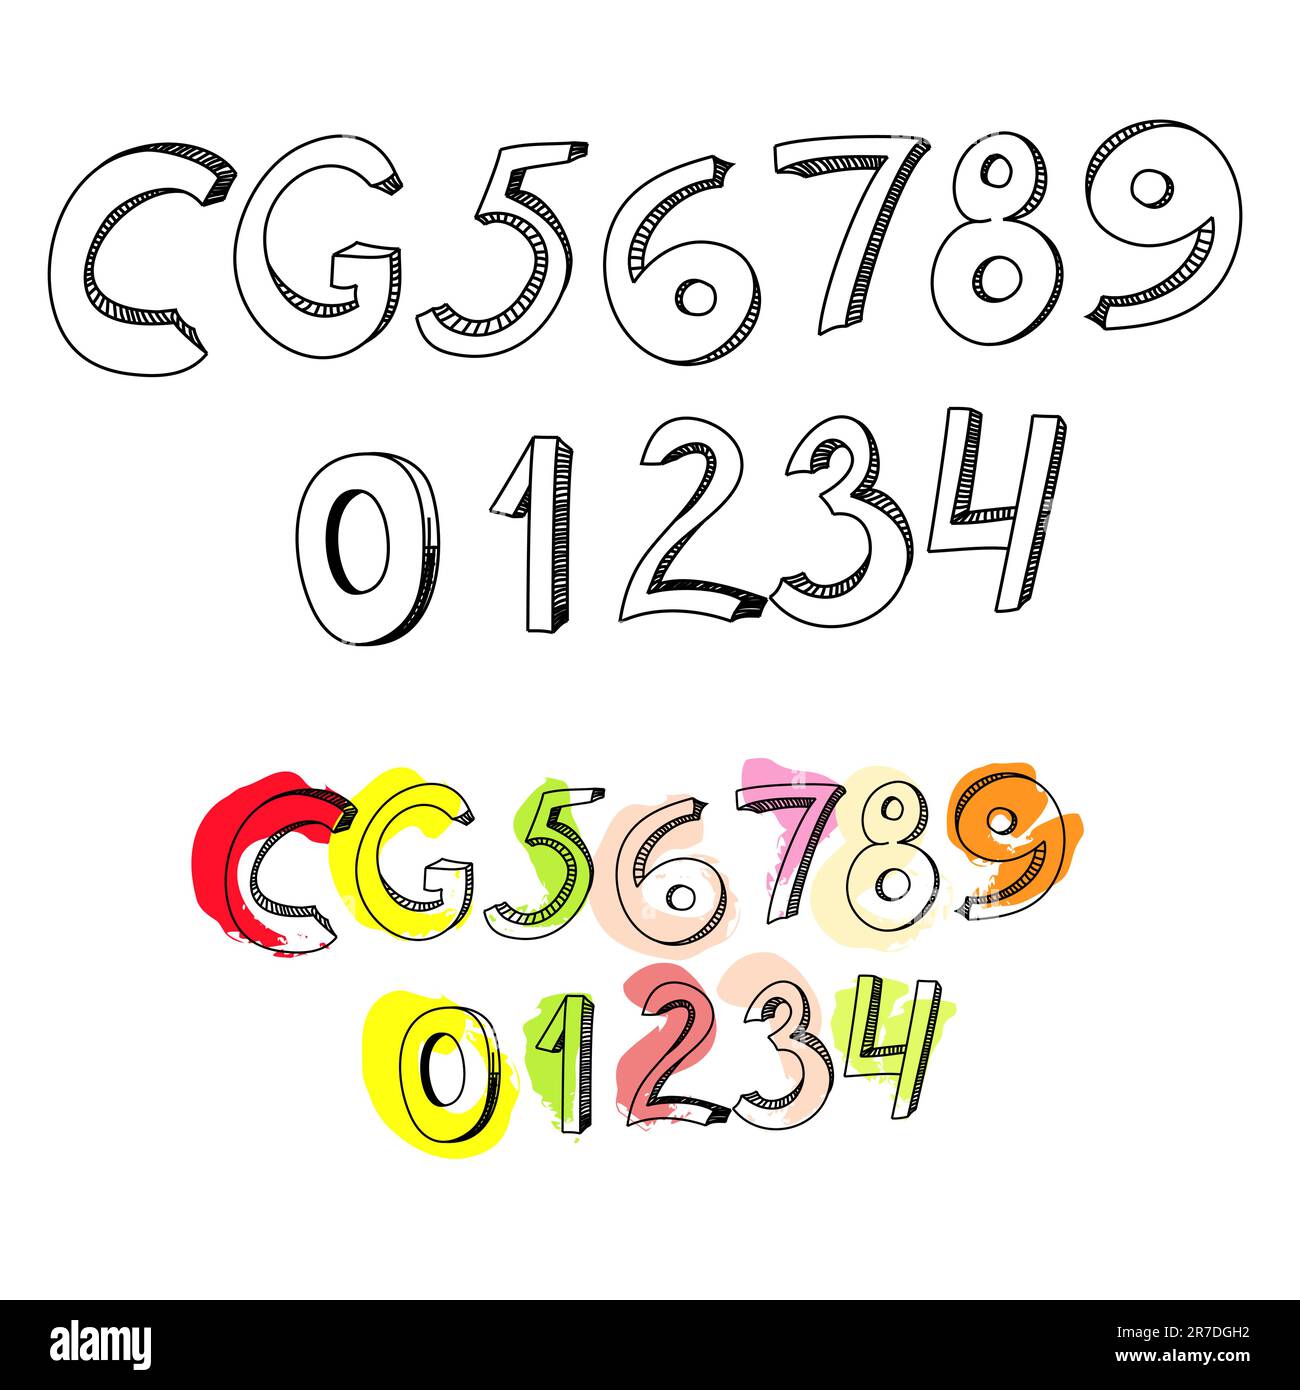 Buchstaben C, G und Zahlen 1, 2, 3, 4, 5, 6, 7, 8, 9 Stock Vektor